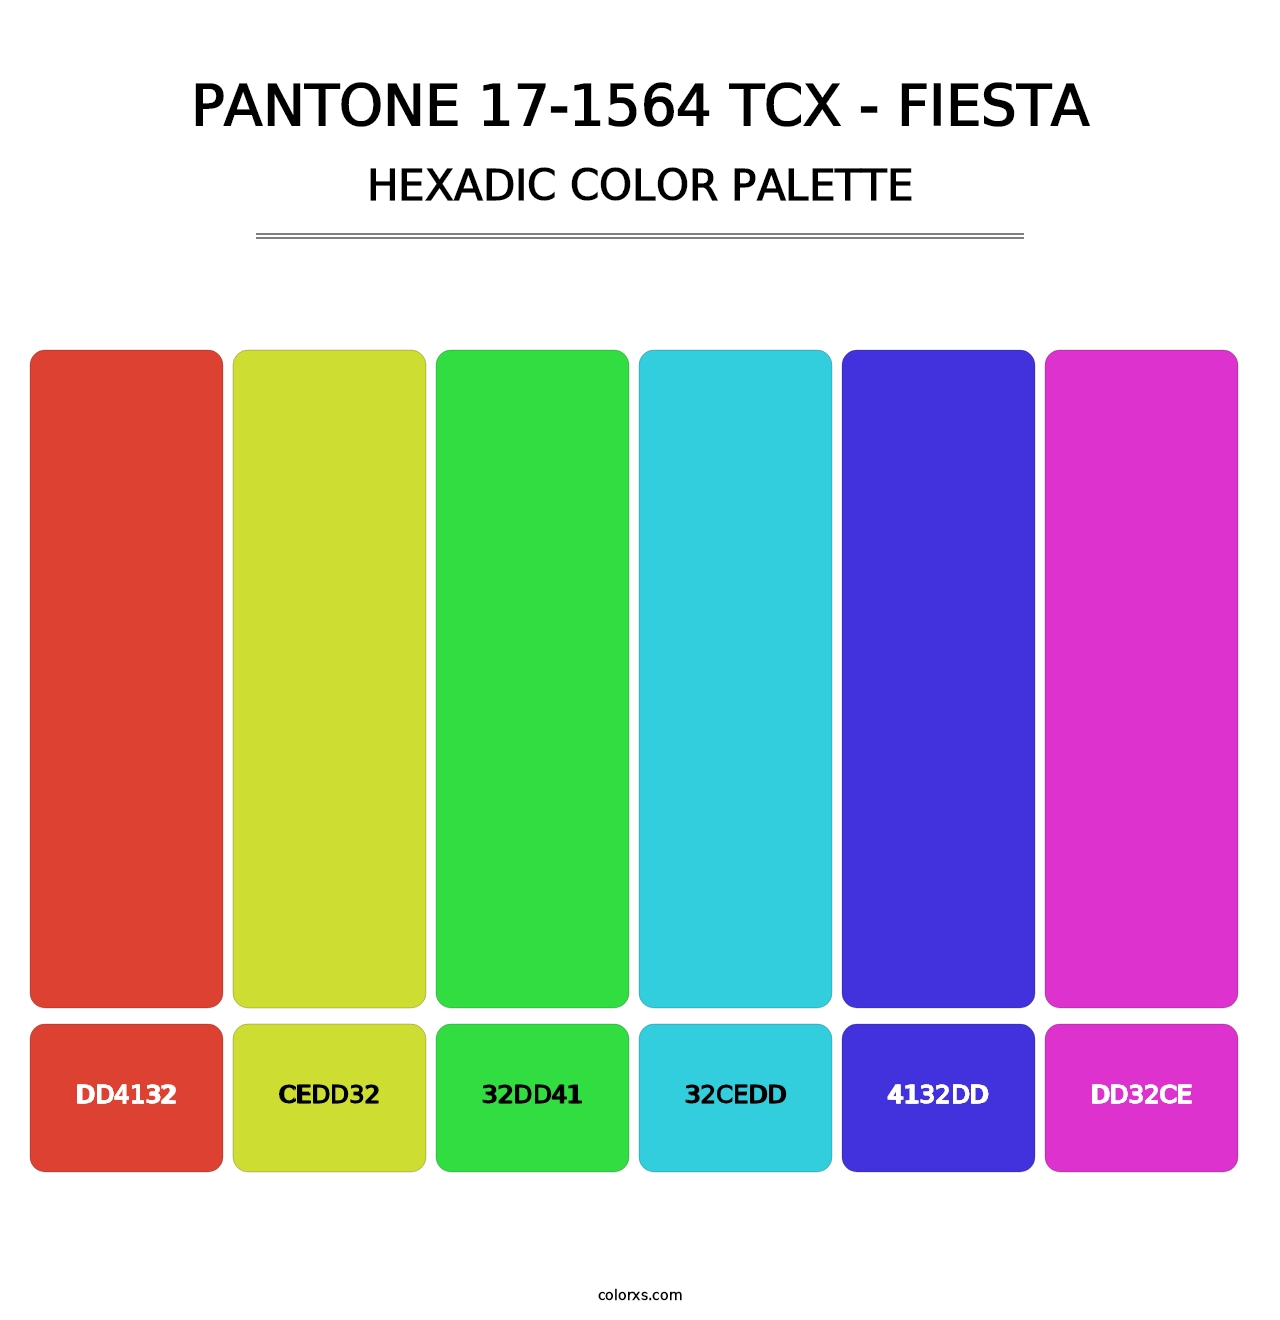 PANTONE 17-1564 TCX - Fiesta - Hexadic Color Palette